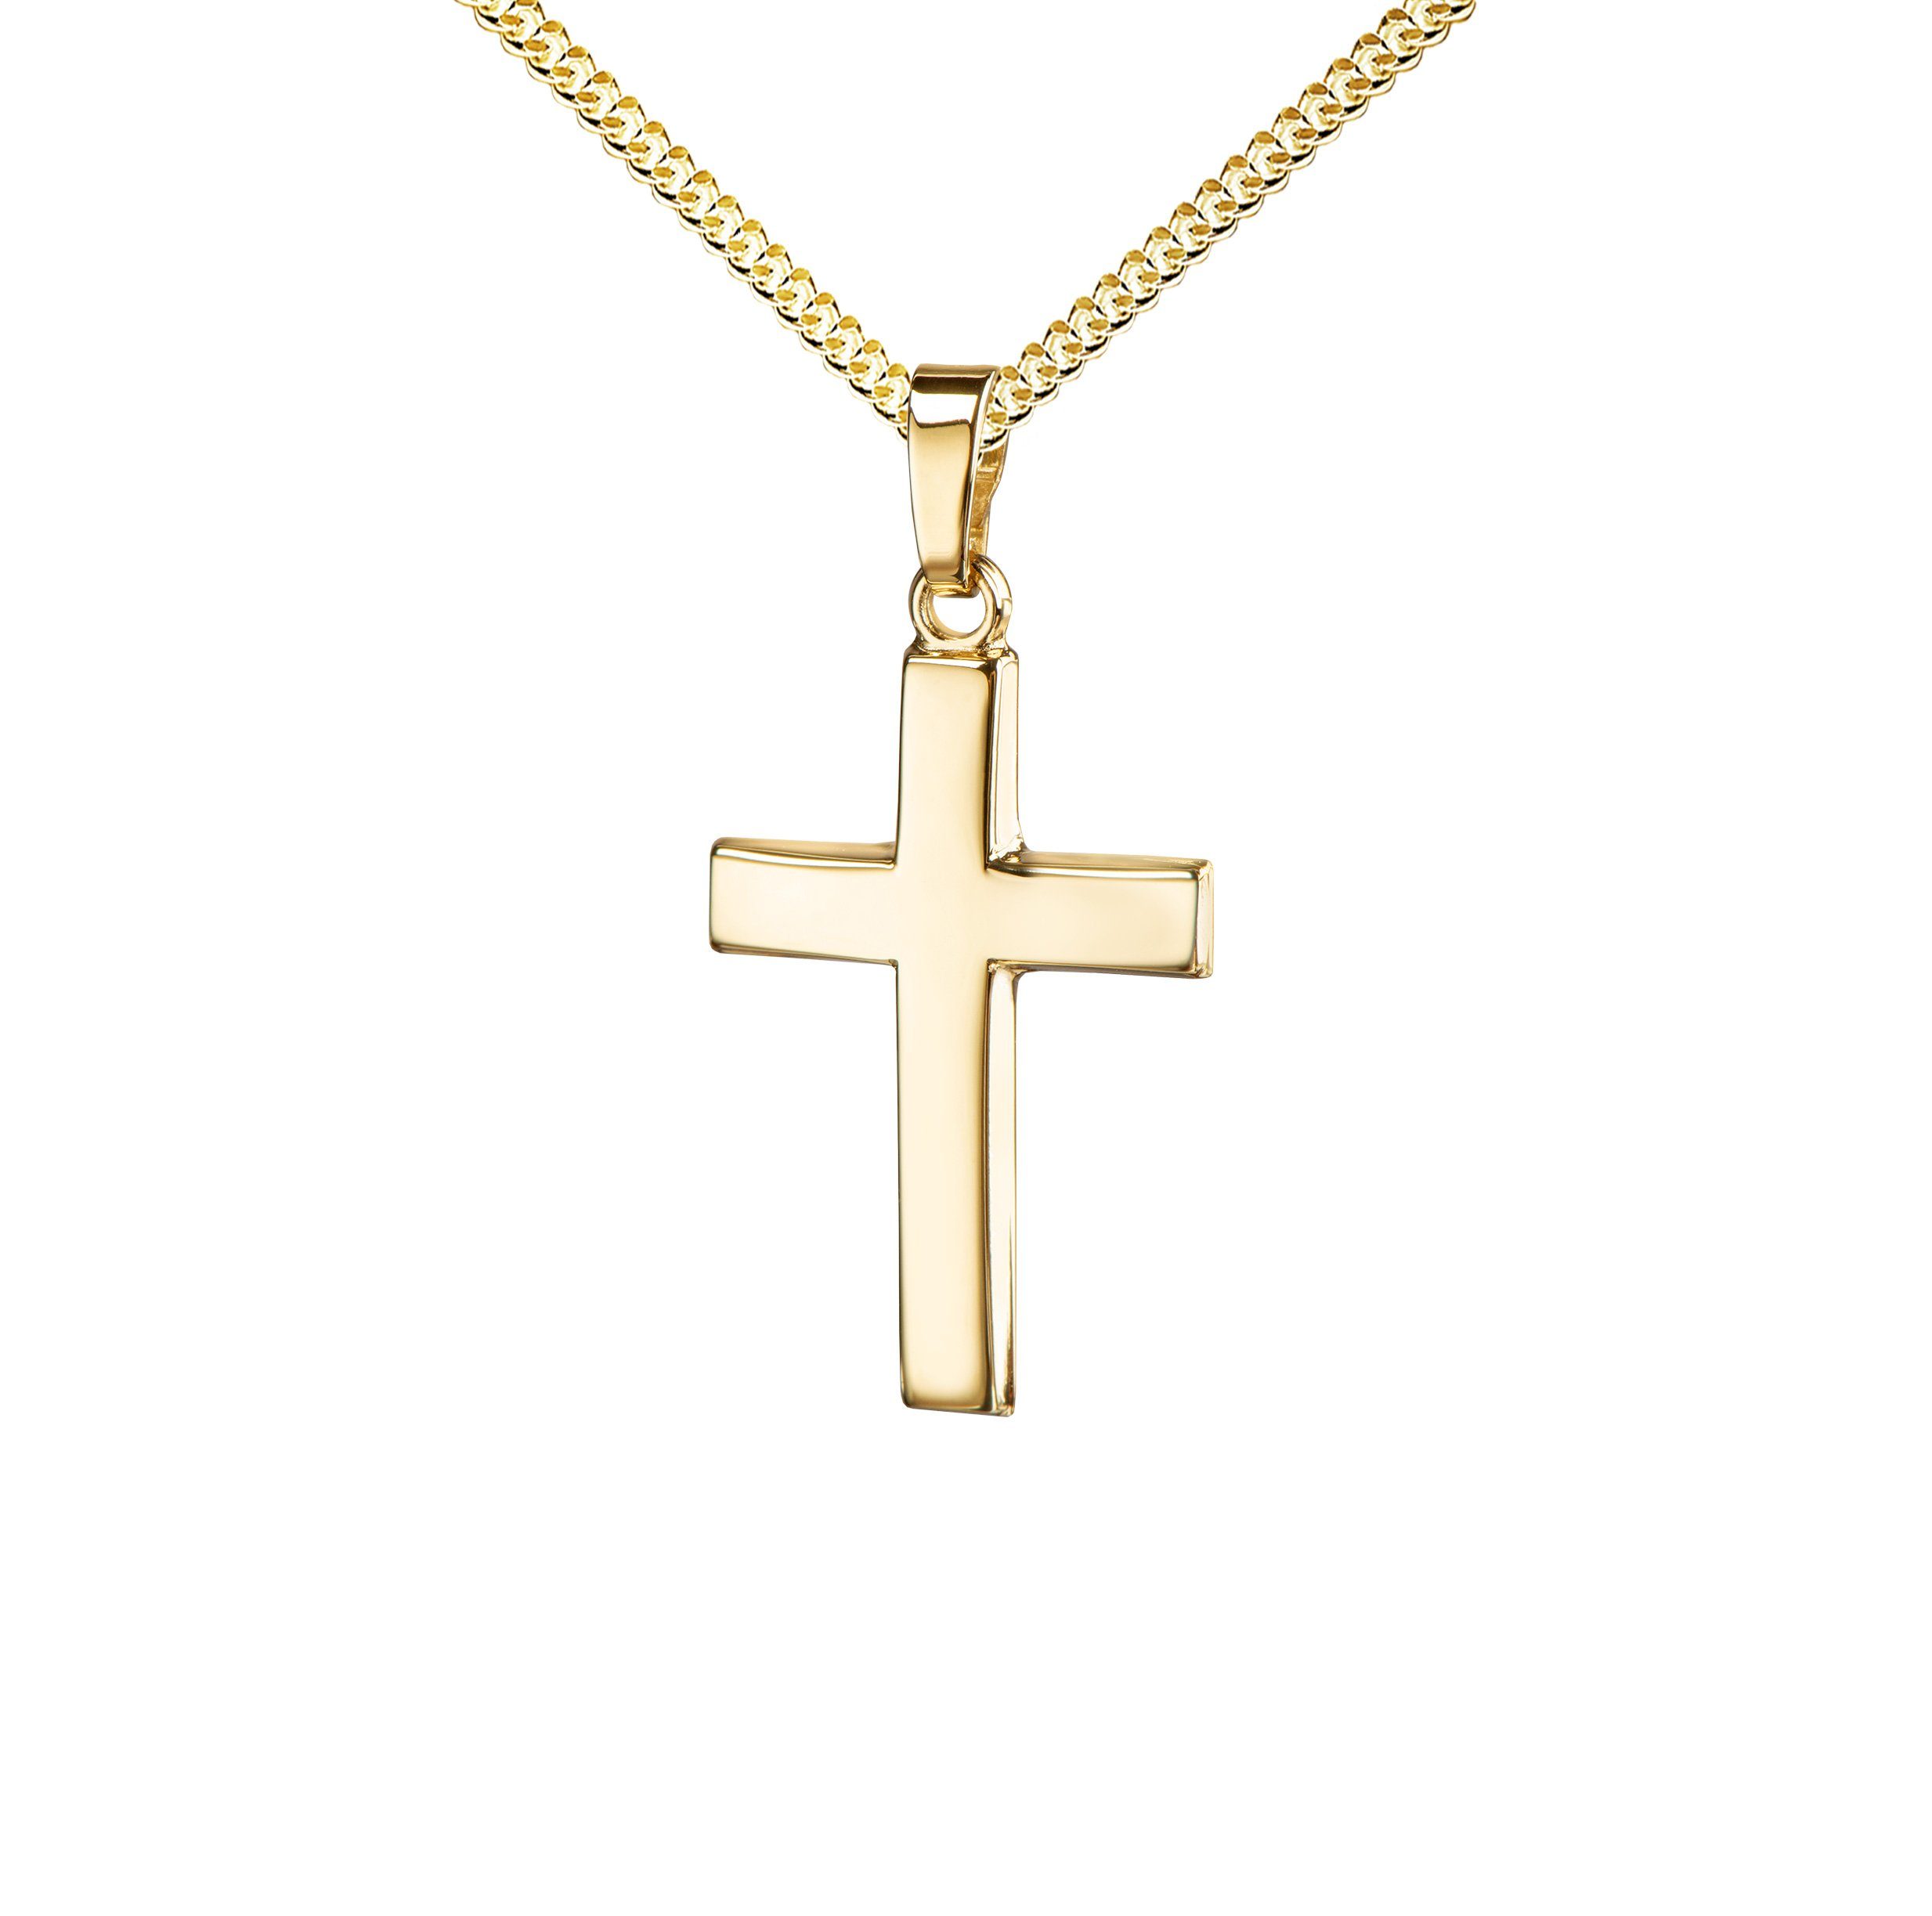 JEVELION Kreuzkette Kreuz Anhänger 750 Gold - Made in Germany (Goldkreuz,  für Damen und Herren), Mit Halskette vergoldet- Länge wählbar 36 - 70 cm.